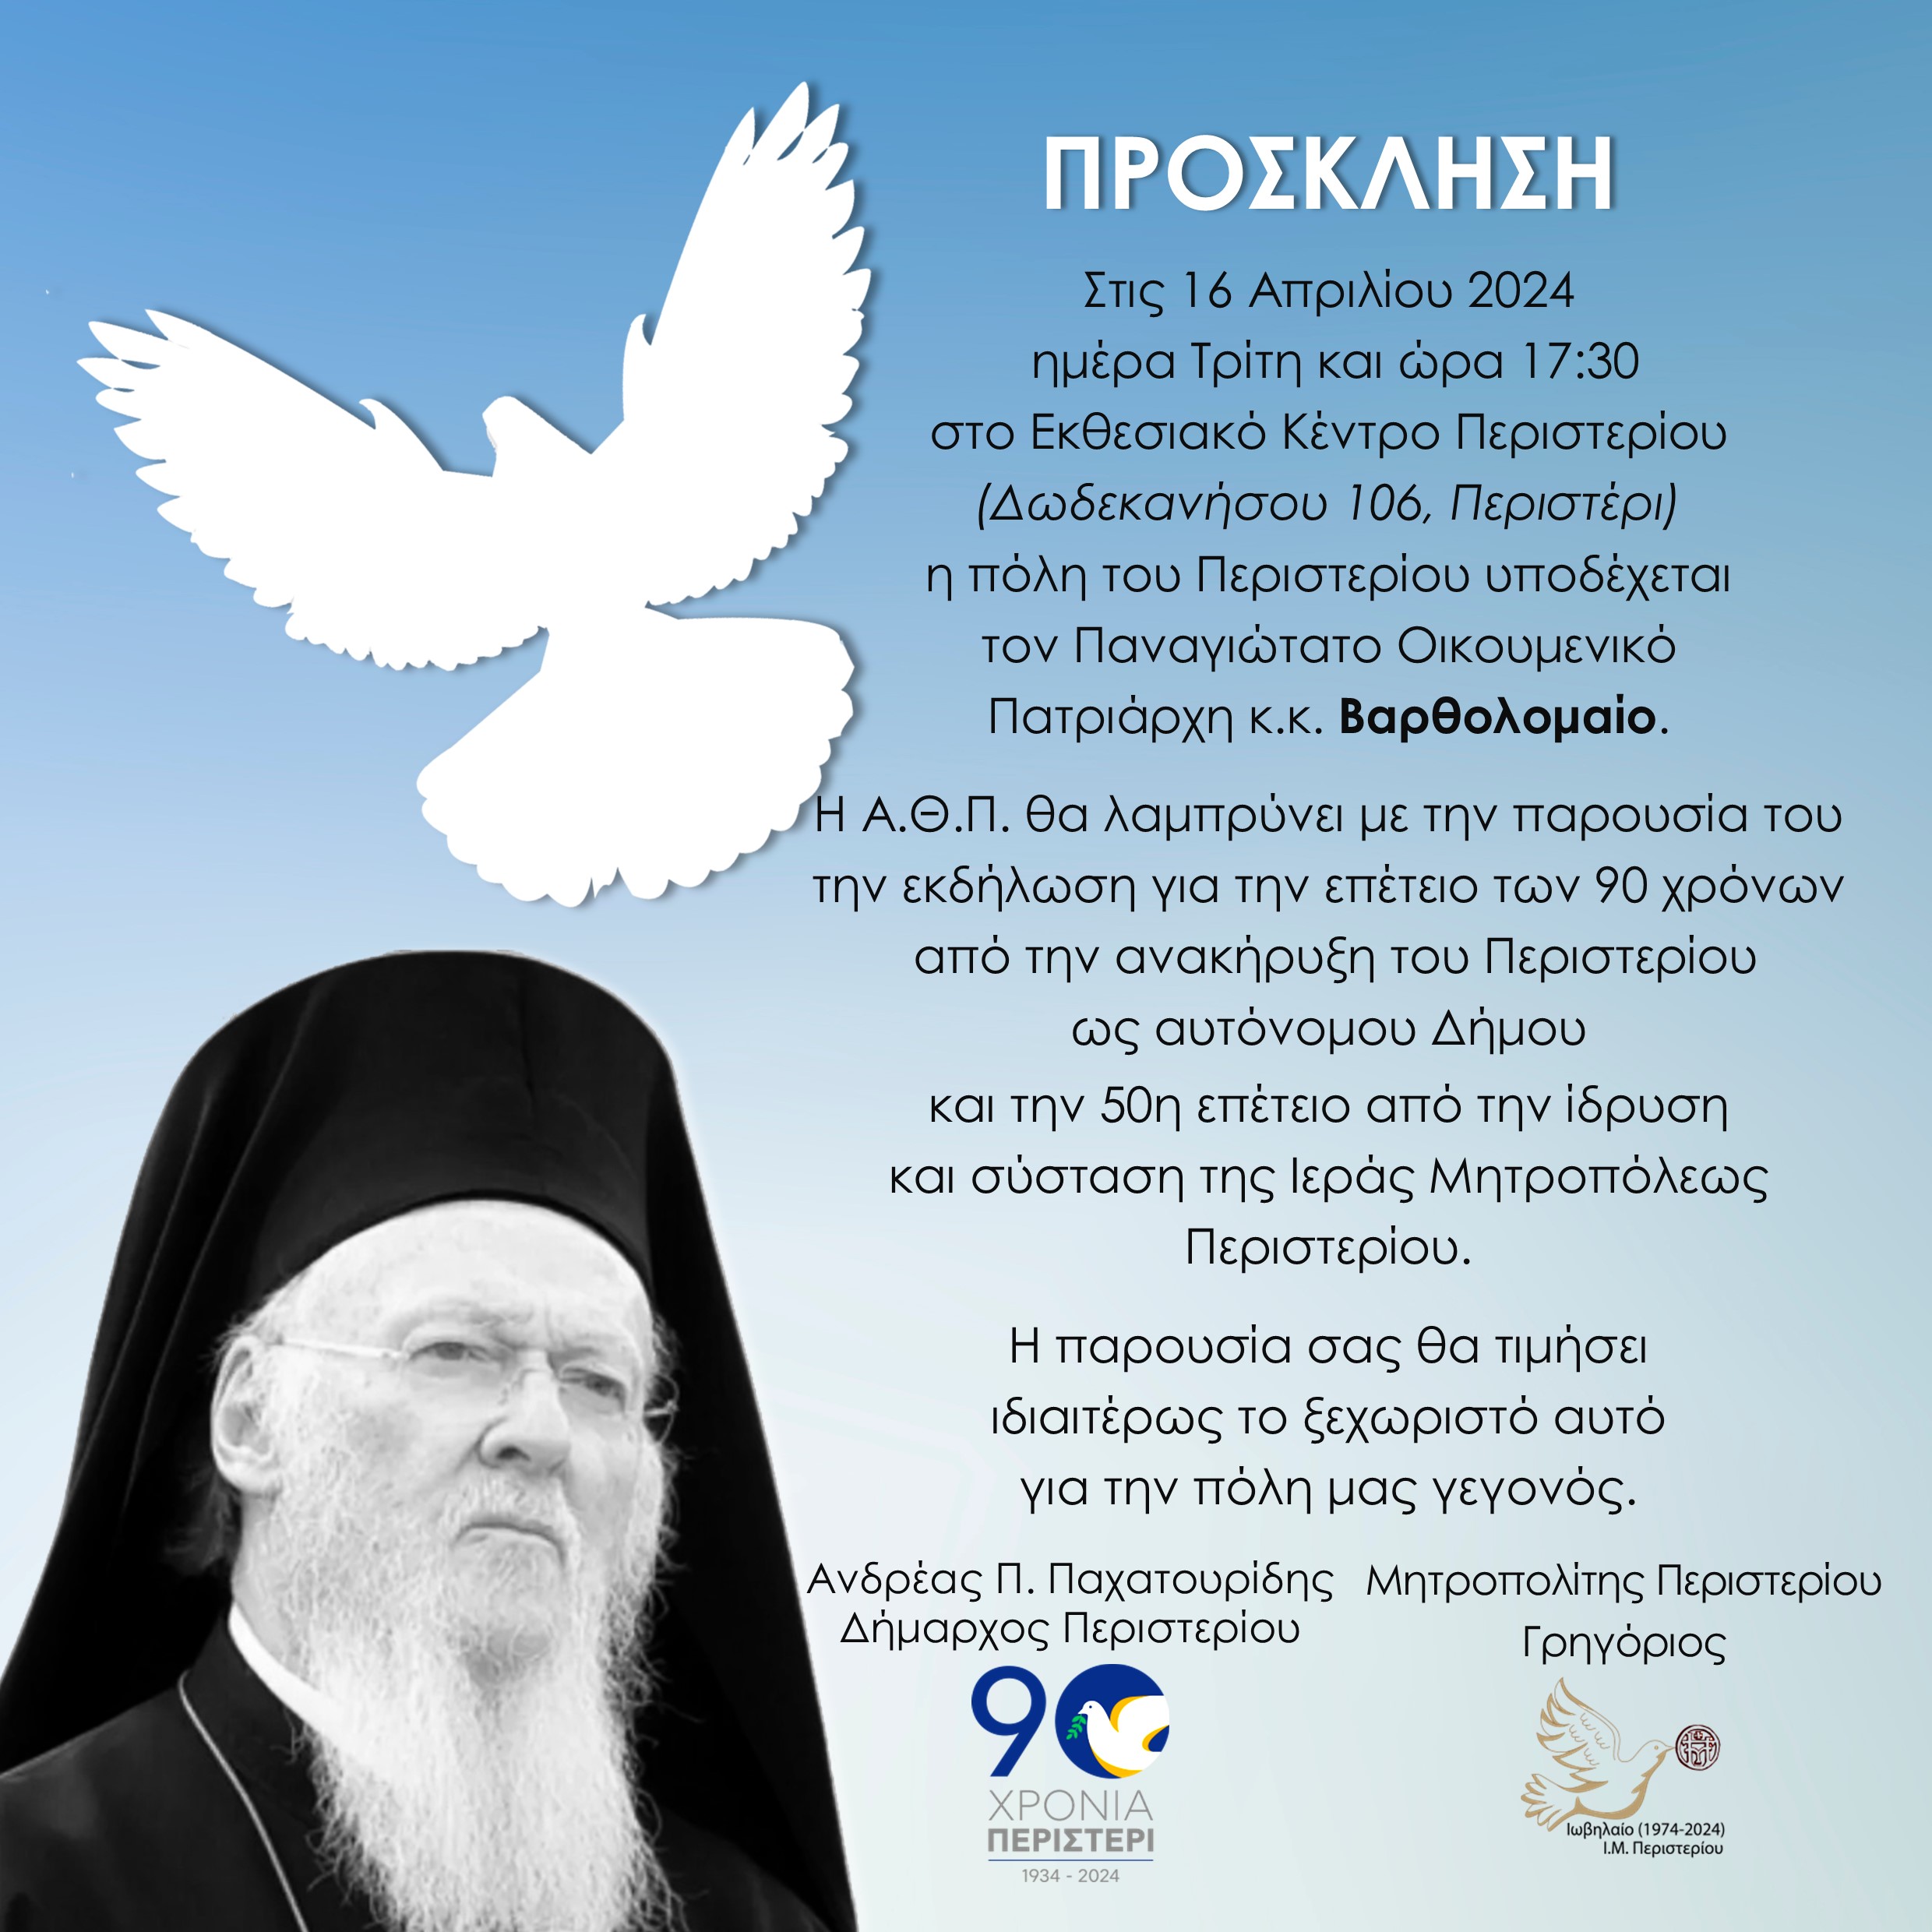 Η πόλη του Περιστερίου υποδέχεται τον Παναγιώτατο Οικουμενικό Πατριάρχη κ.κ. Βαρθολομαίο